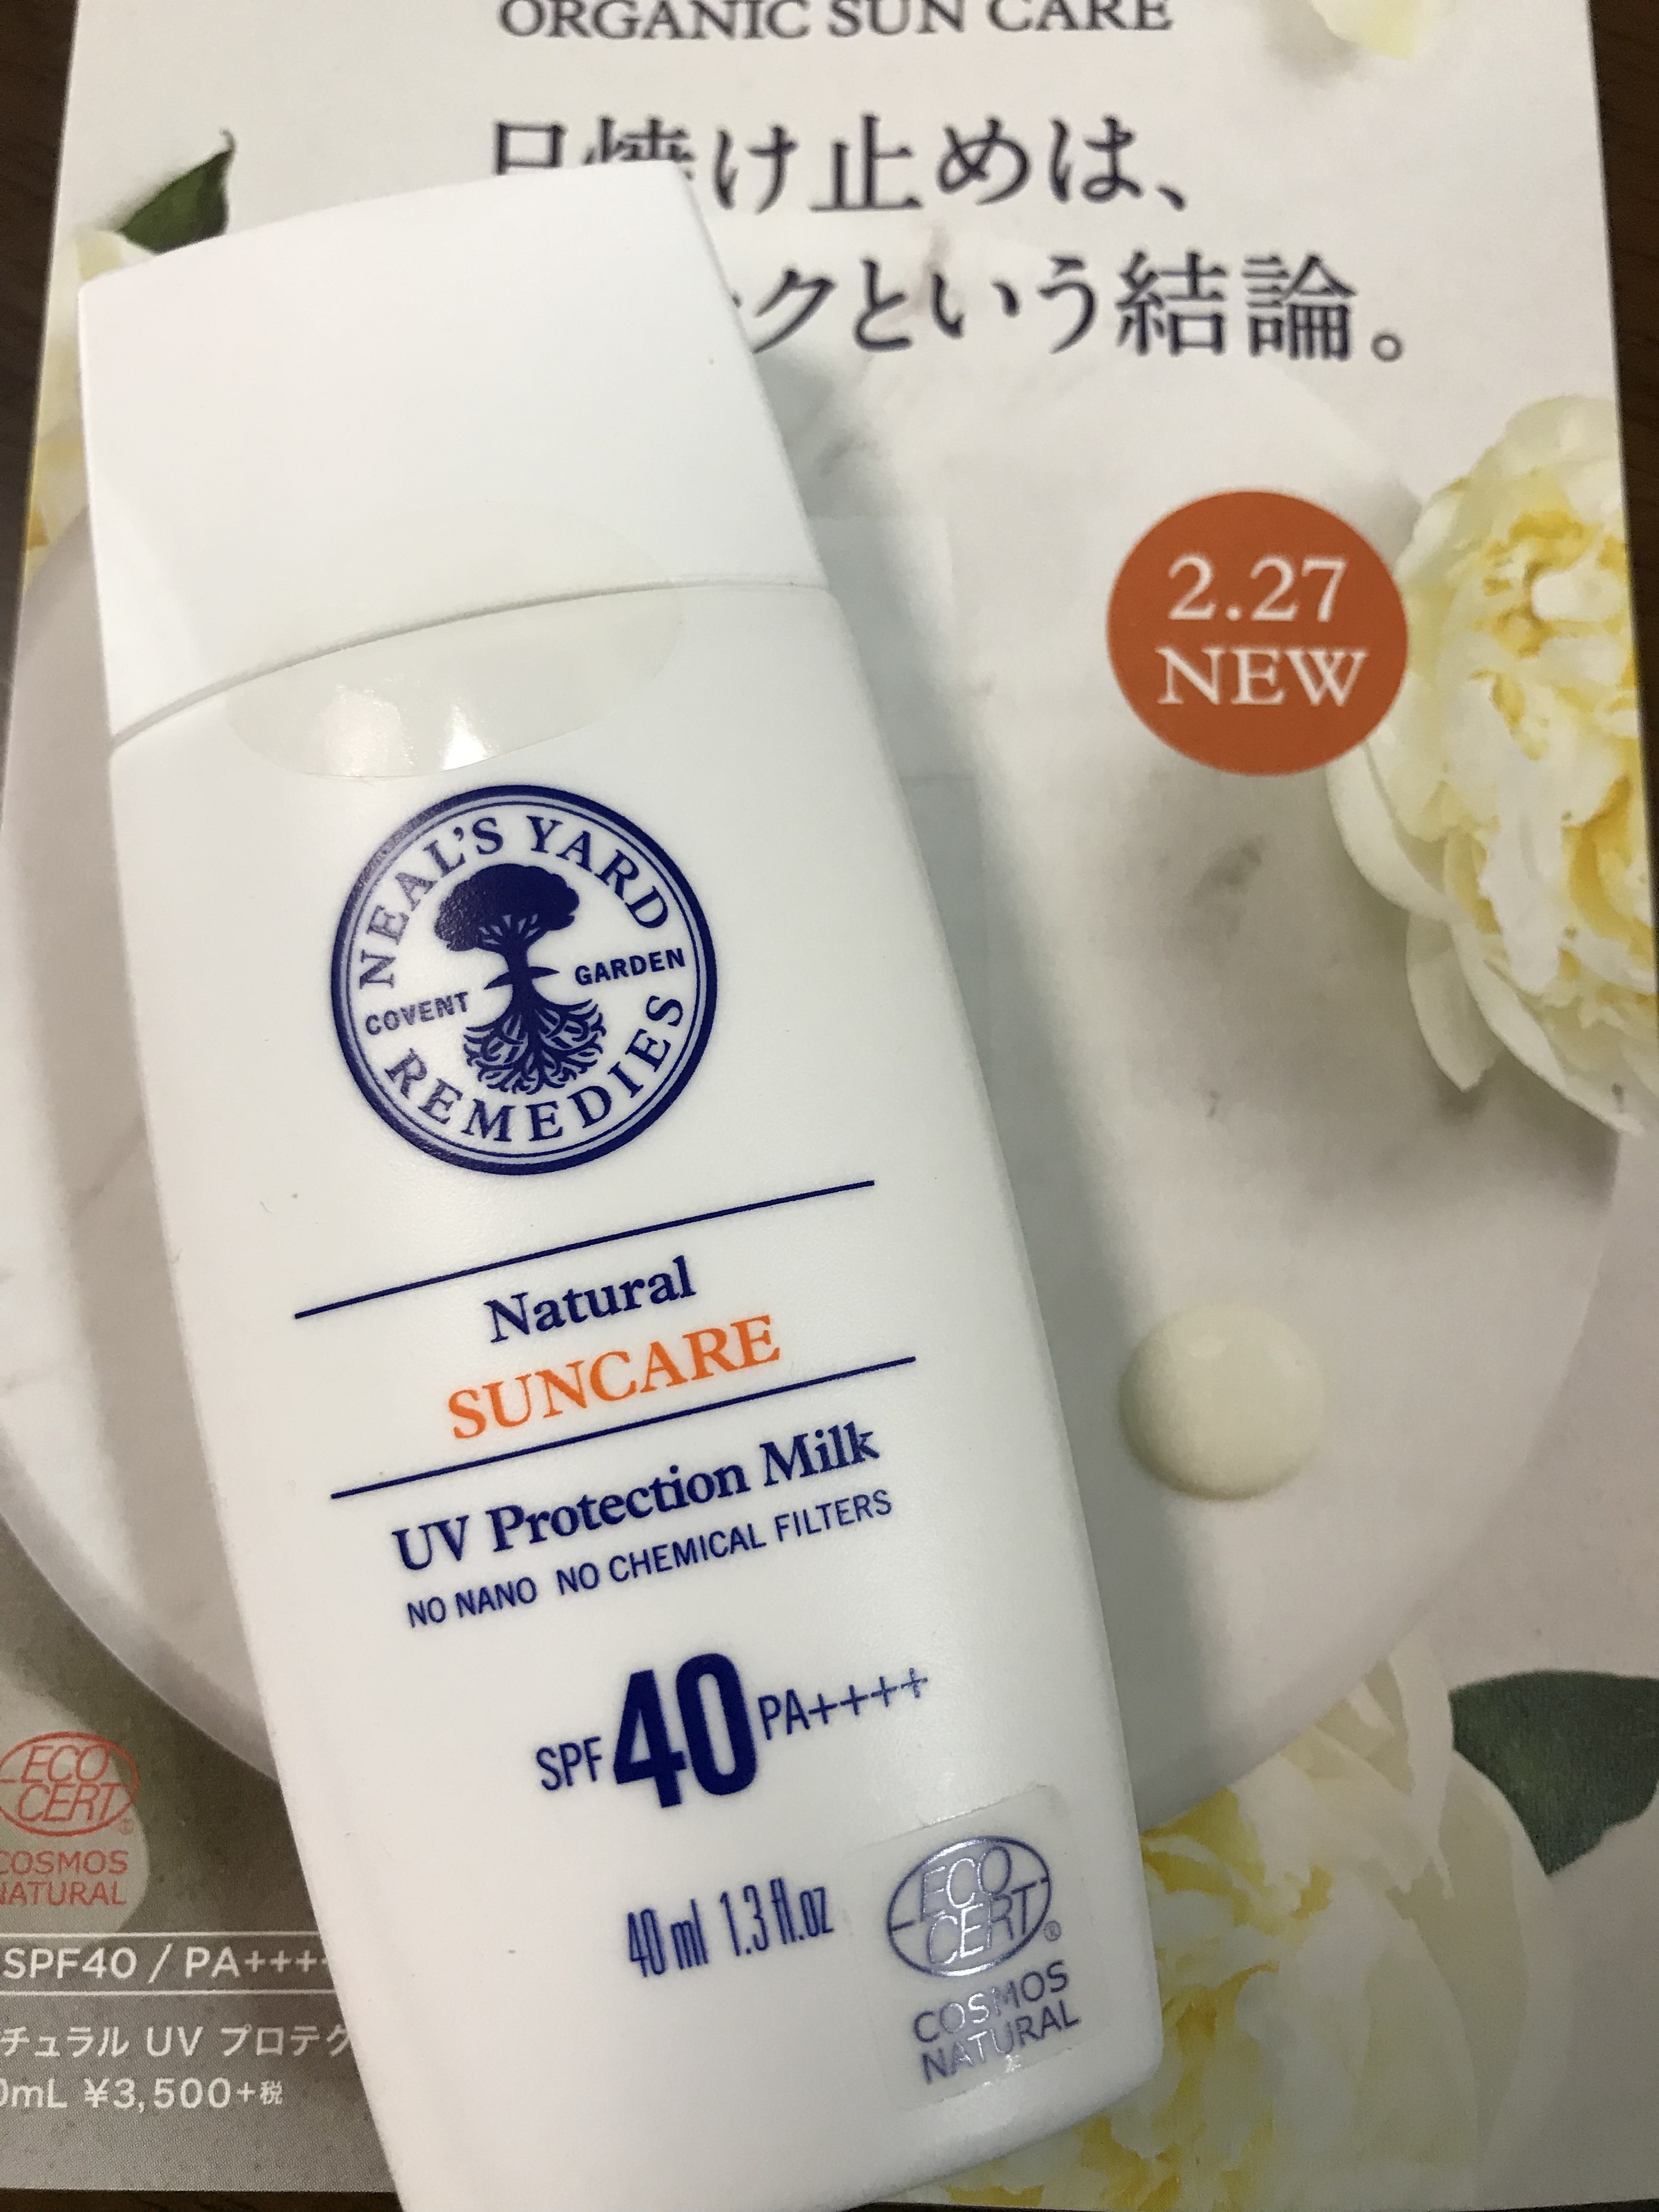 ニールズヤード レメディーズ / ナチュラル UV プロテクション ミルク